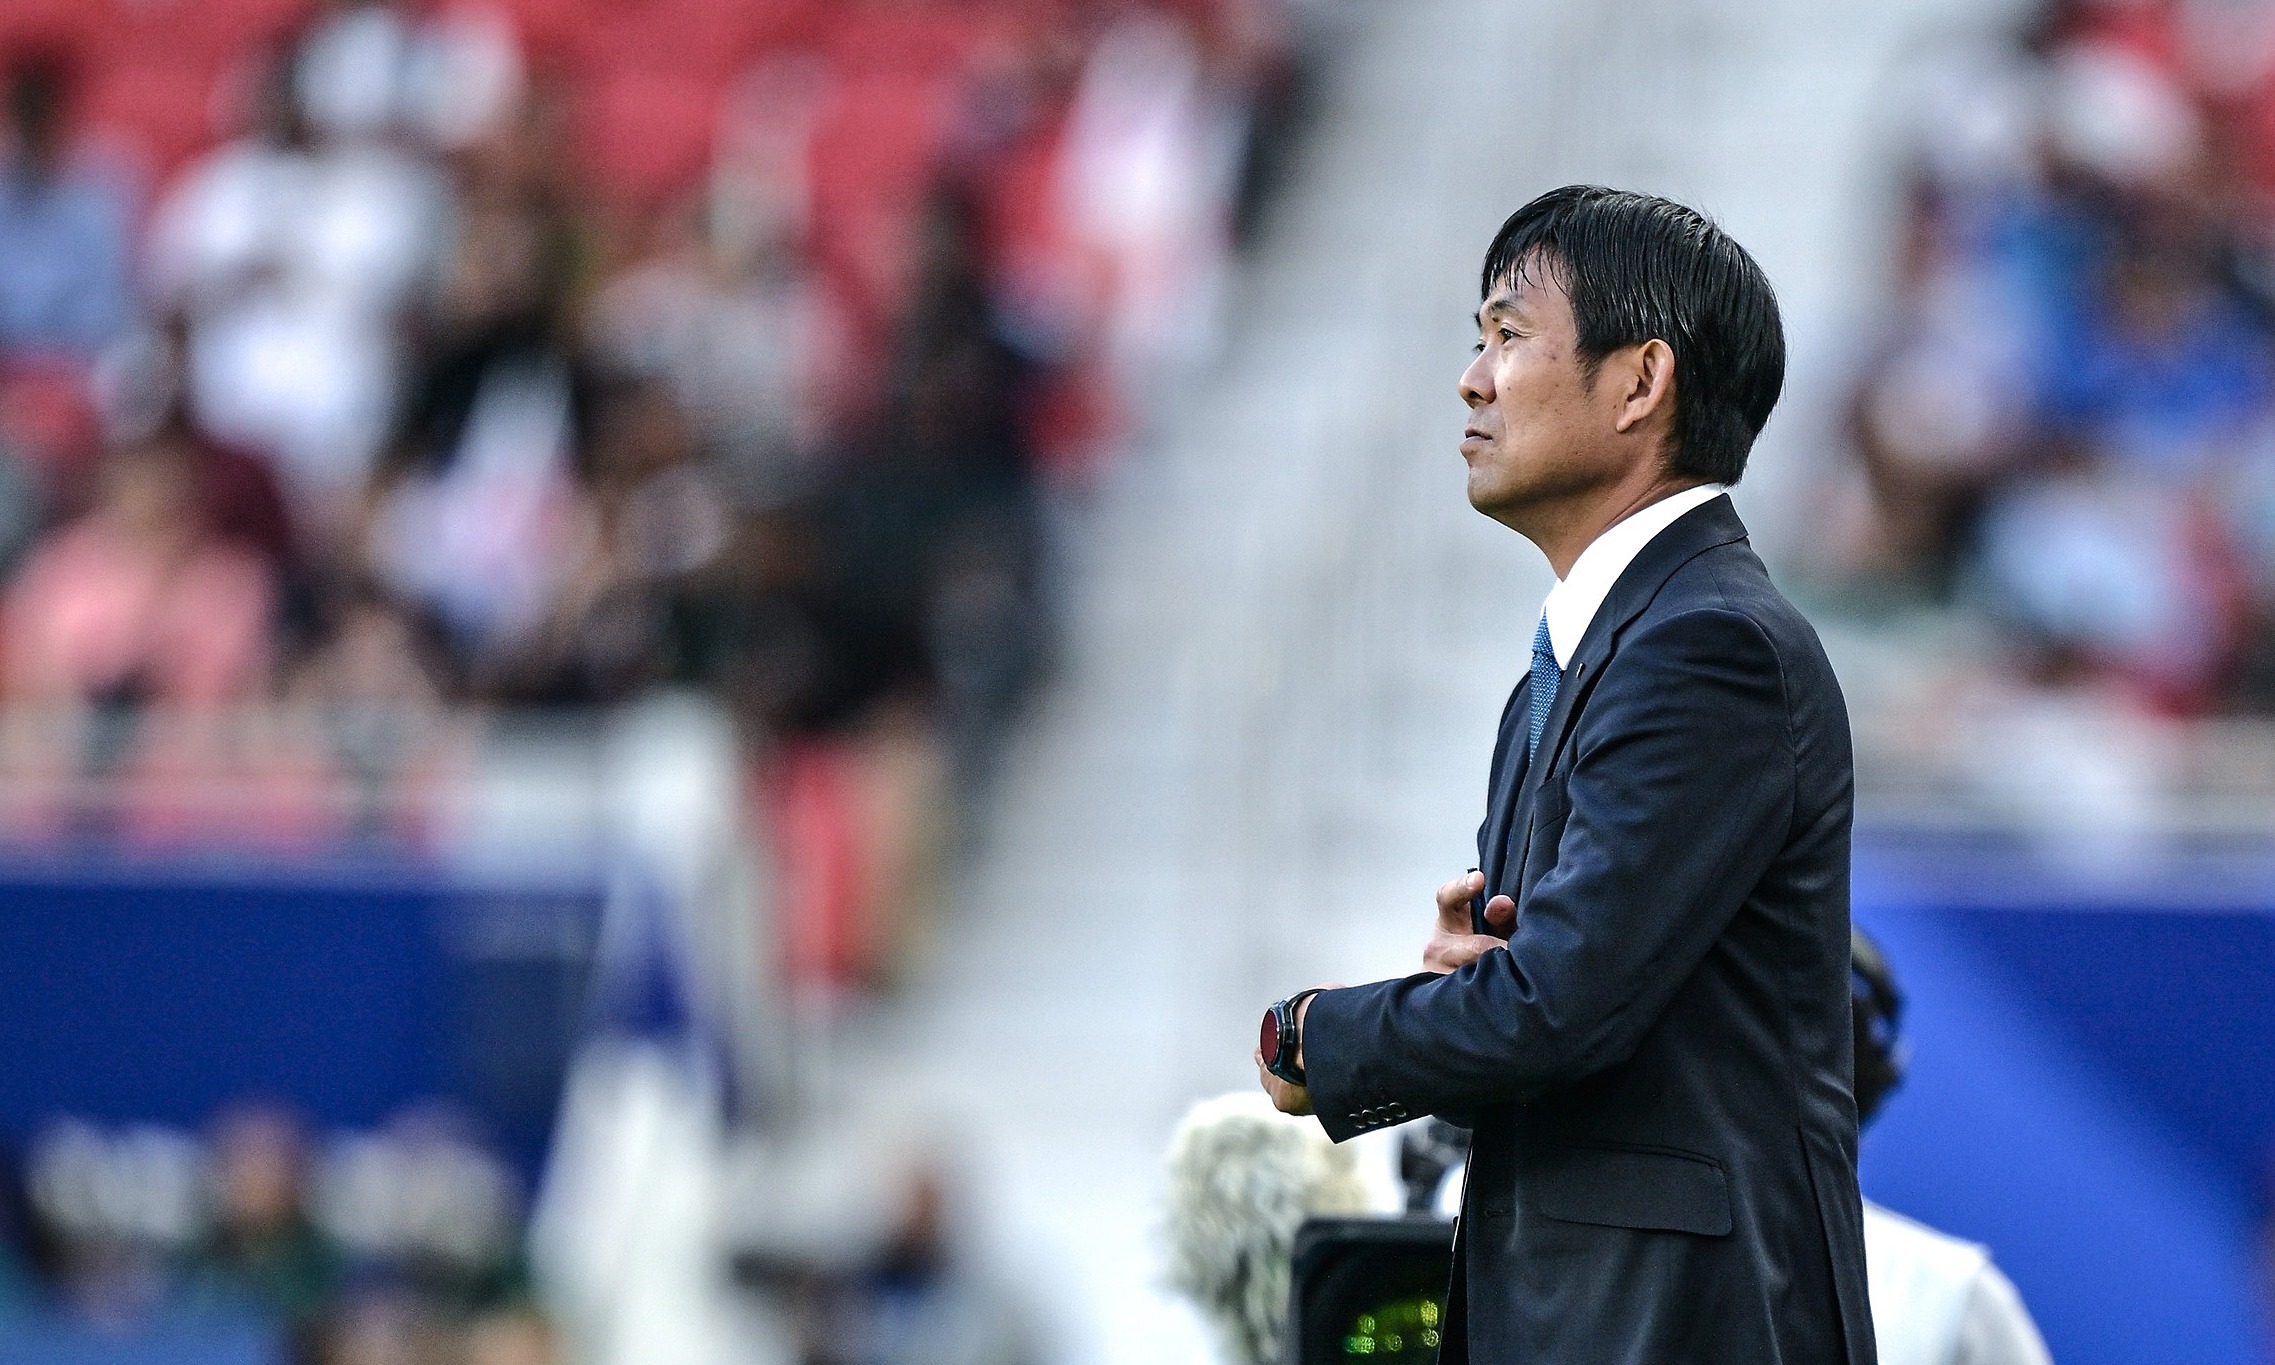 vietnam prove asian cup a tough tournament: japan coach